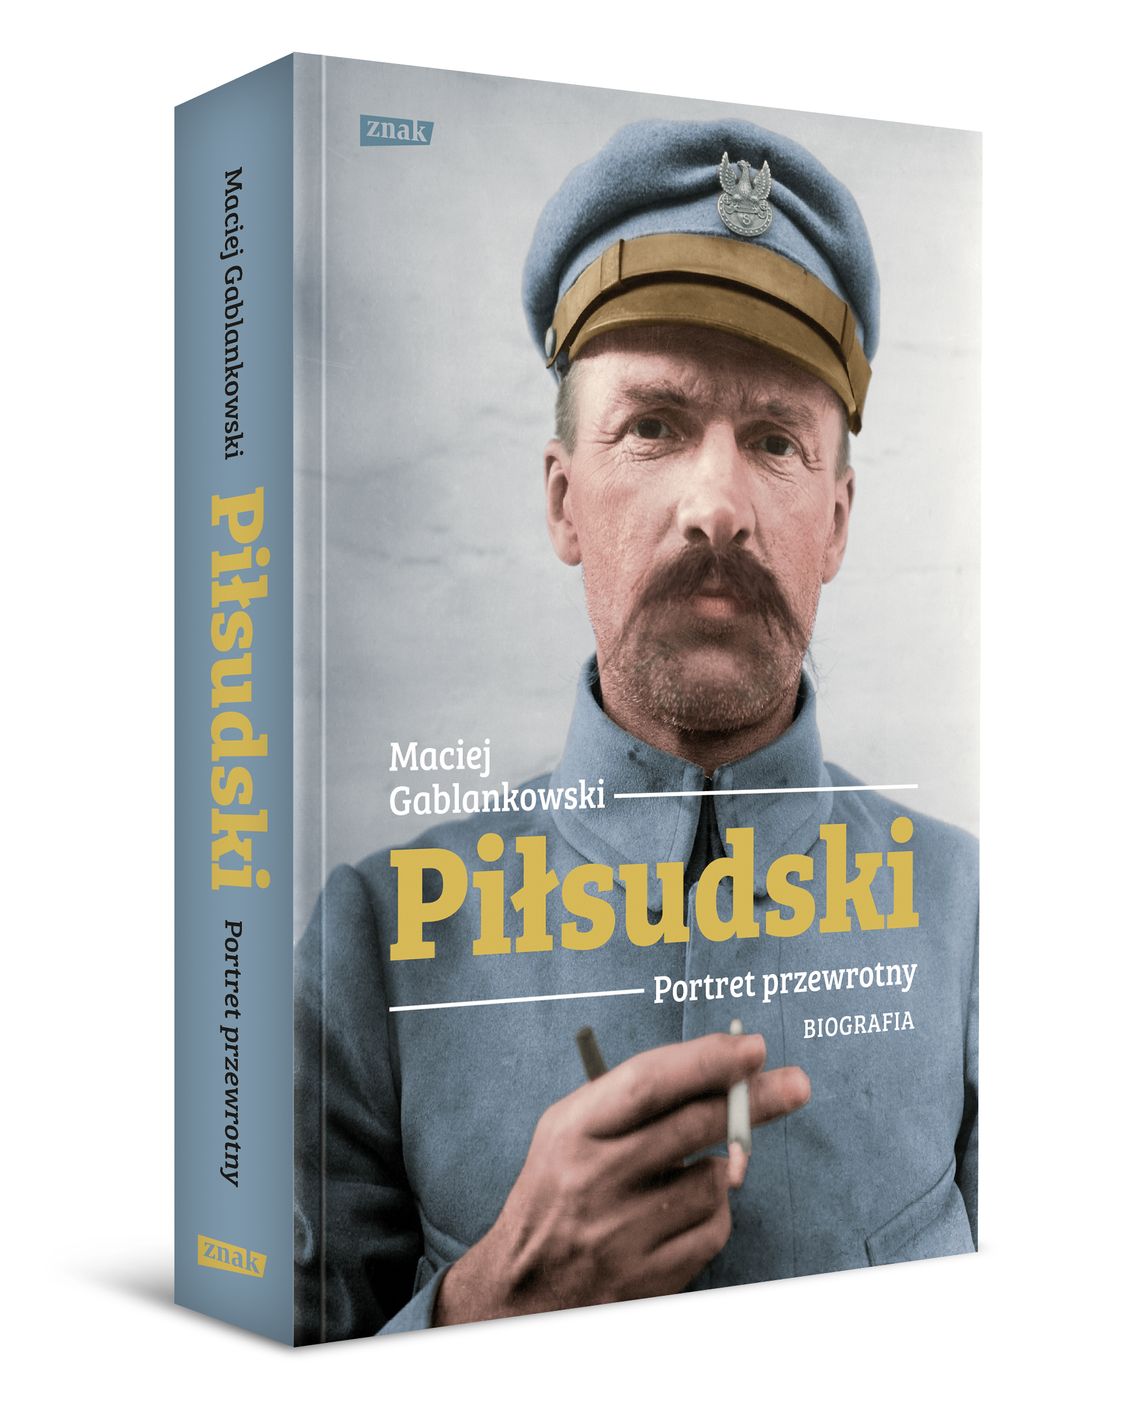 Piłsudski. Portret przewrotny - książka Macieja Gablankowskiego